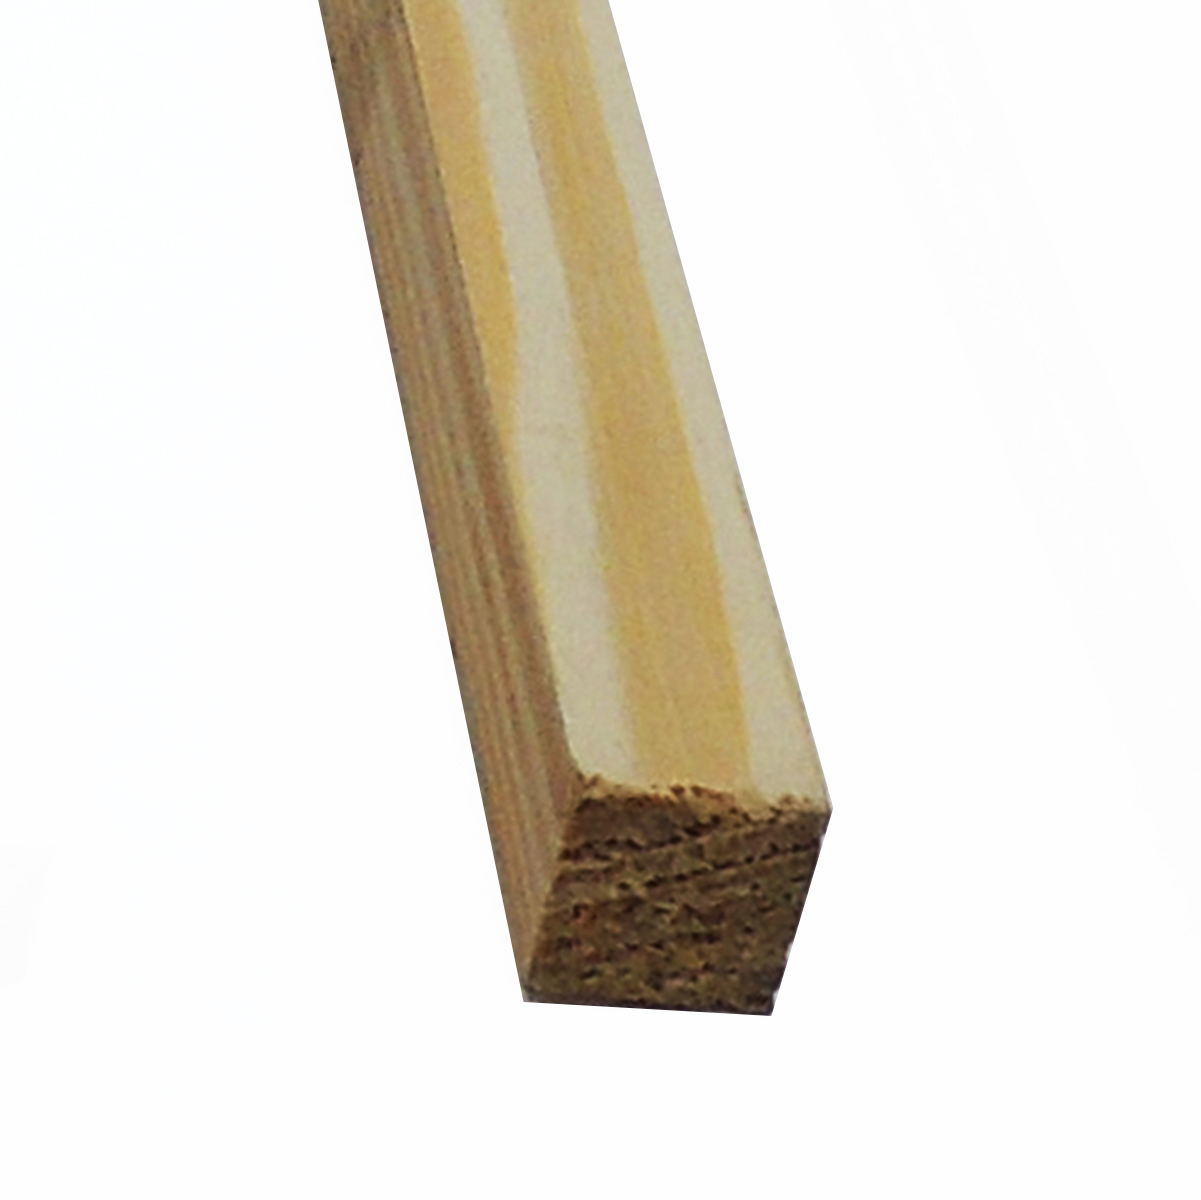 Listón de madera (L x An x Al: 400 x 8 x 4 cm, Pino)